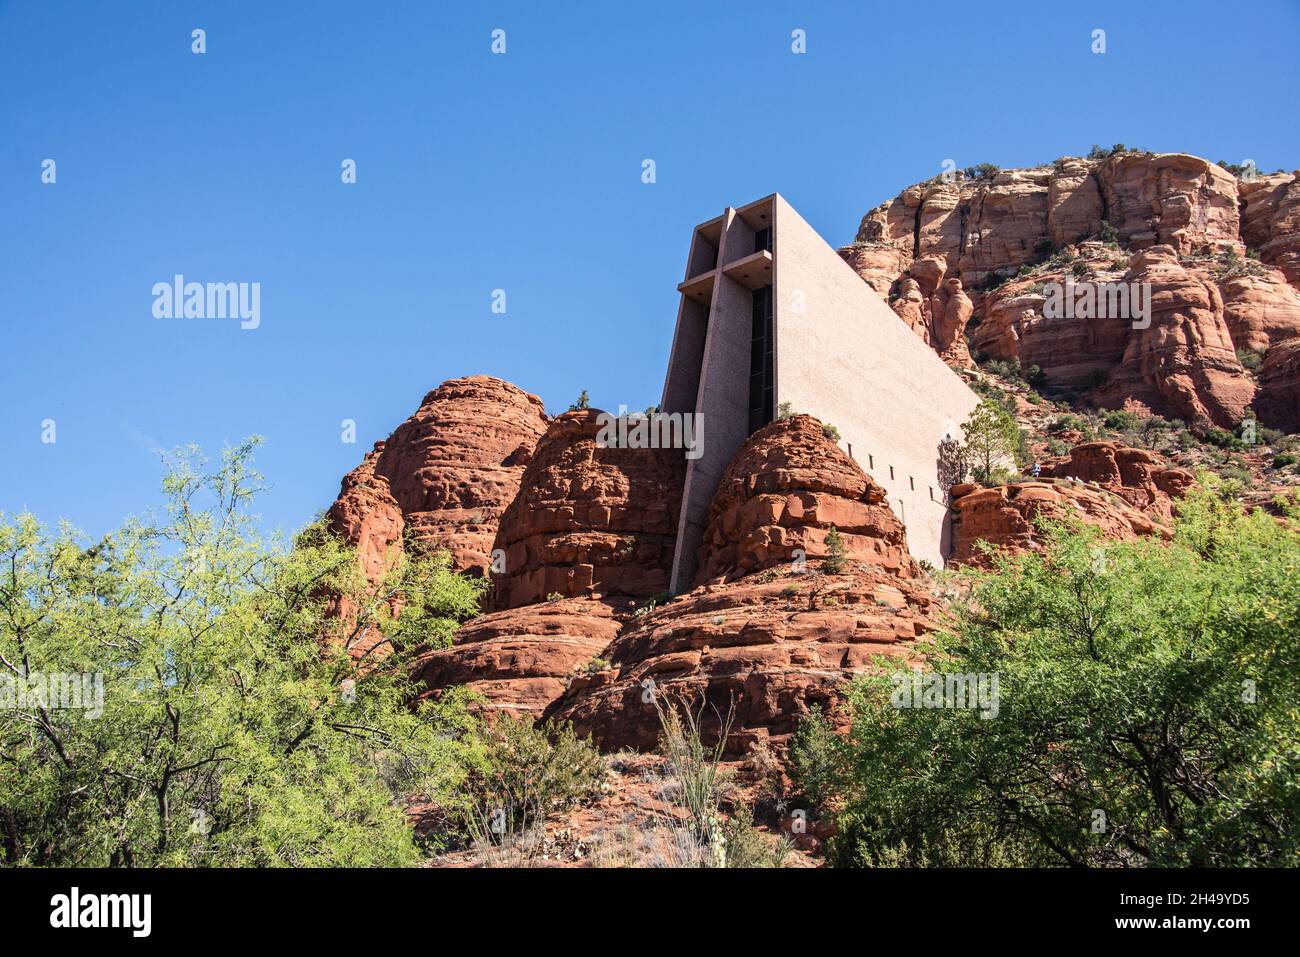 Chapel of the Holy Cross, Sedona, Arizona, U.S.A Stock Photo